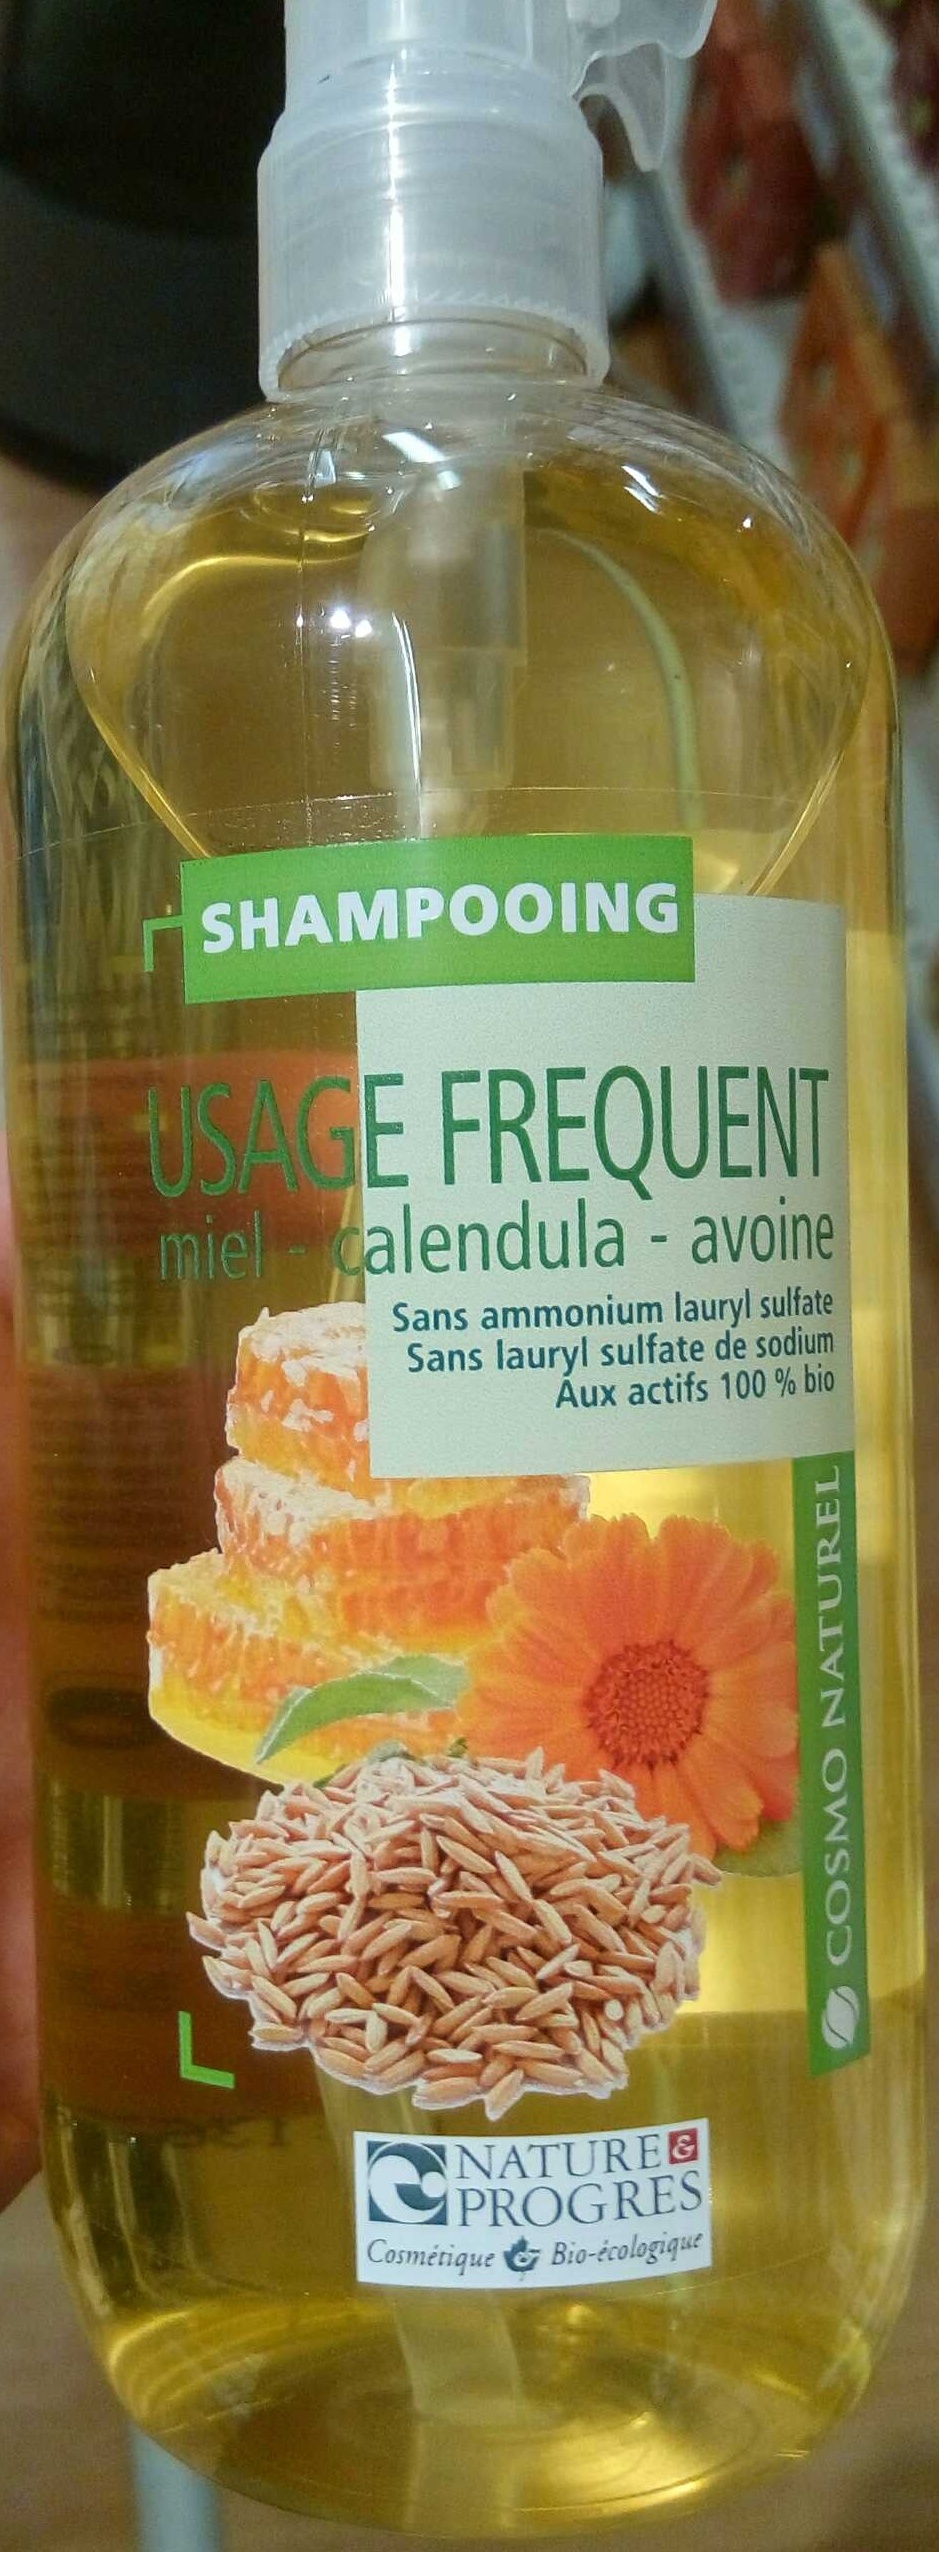 Shampooing usage fréquent Miel - Calendula - Avoine - Produit - fr